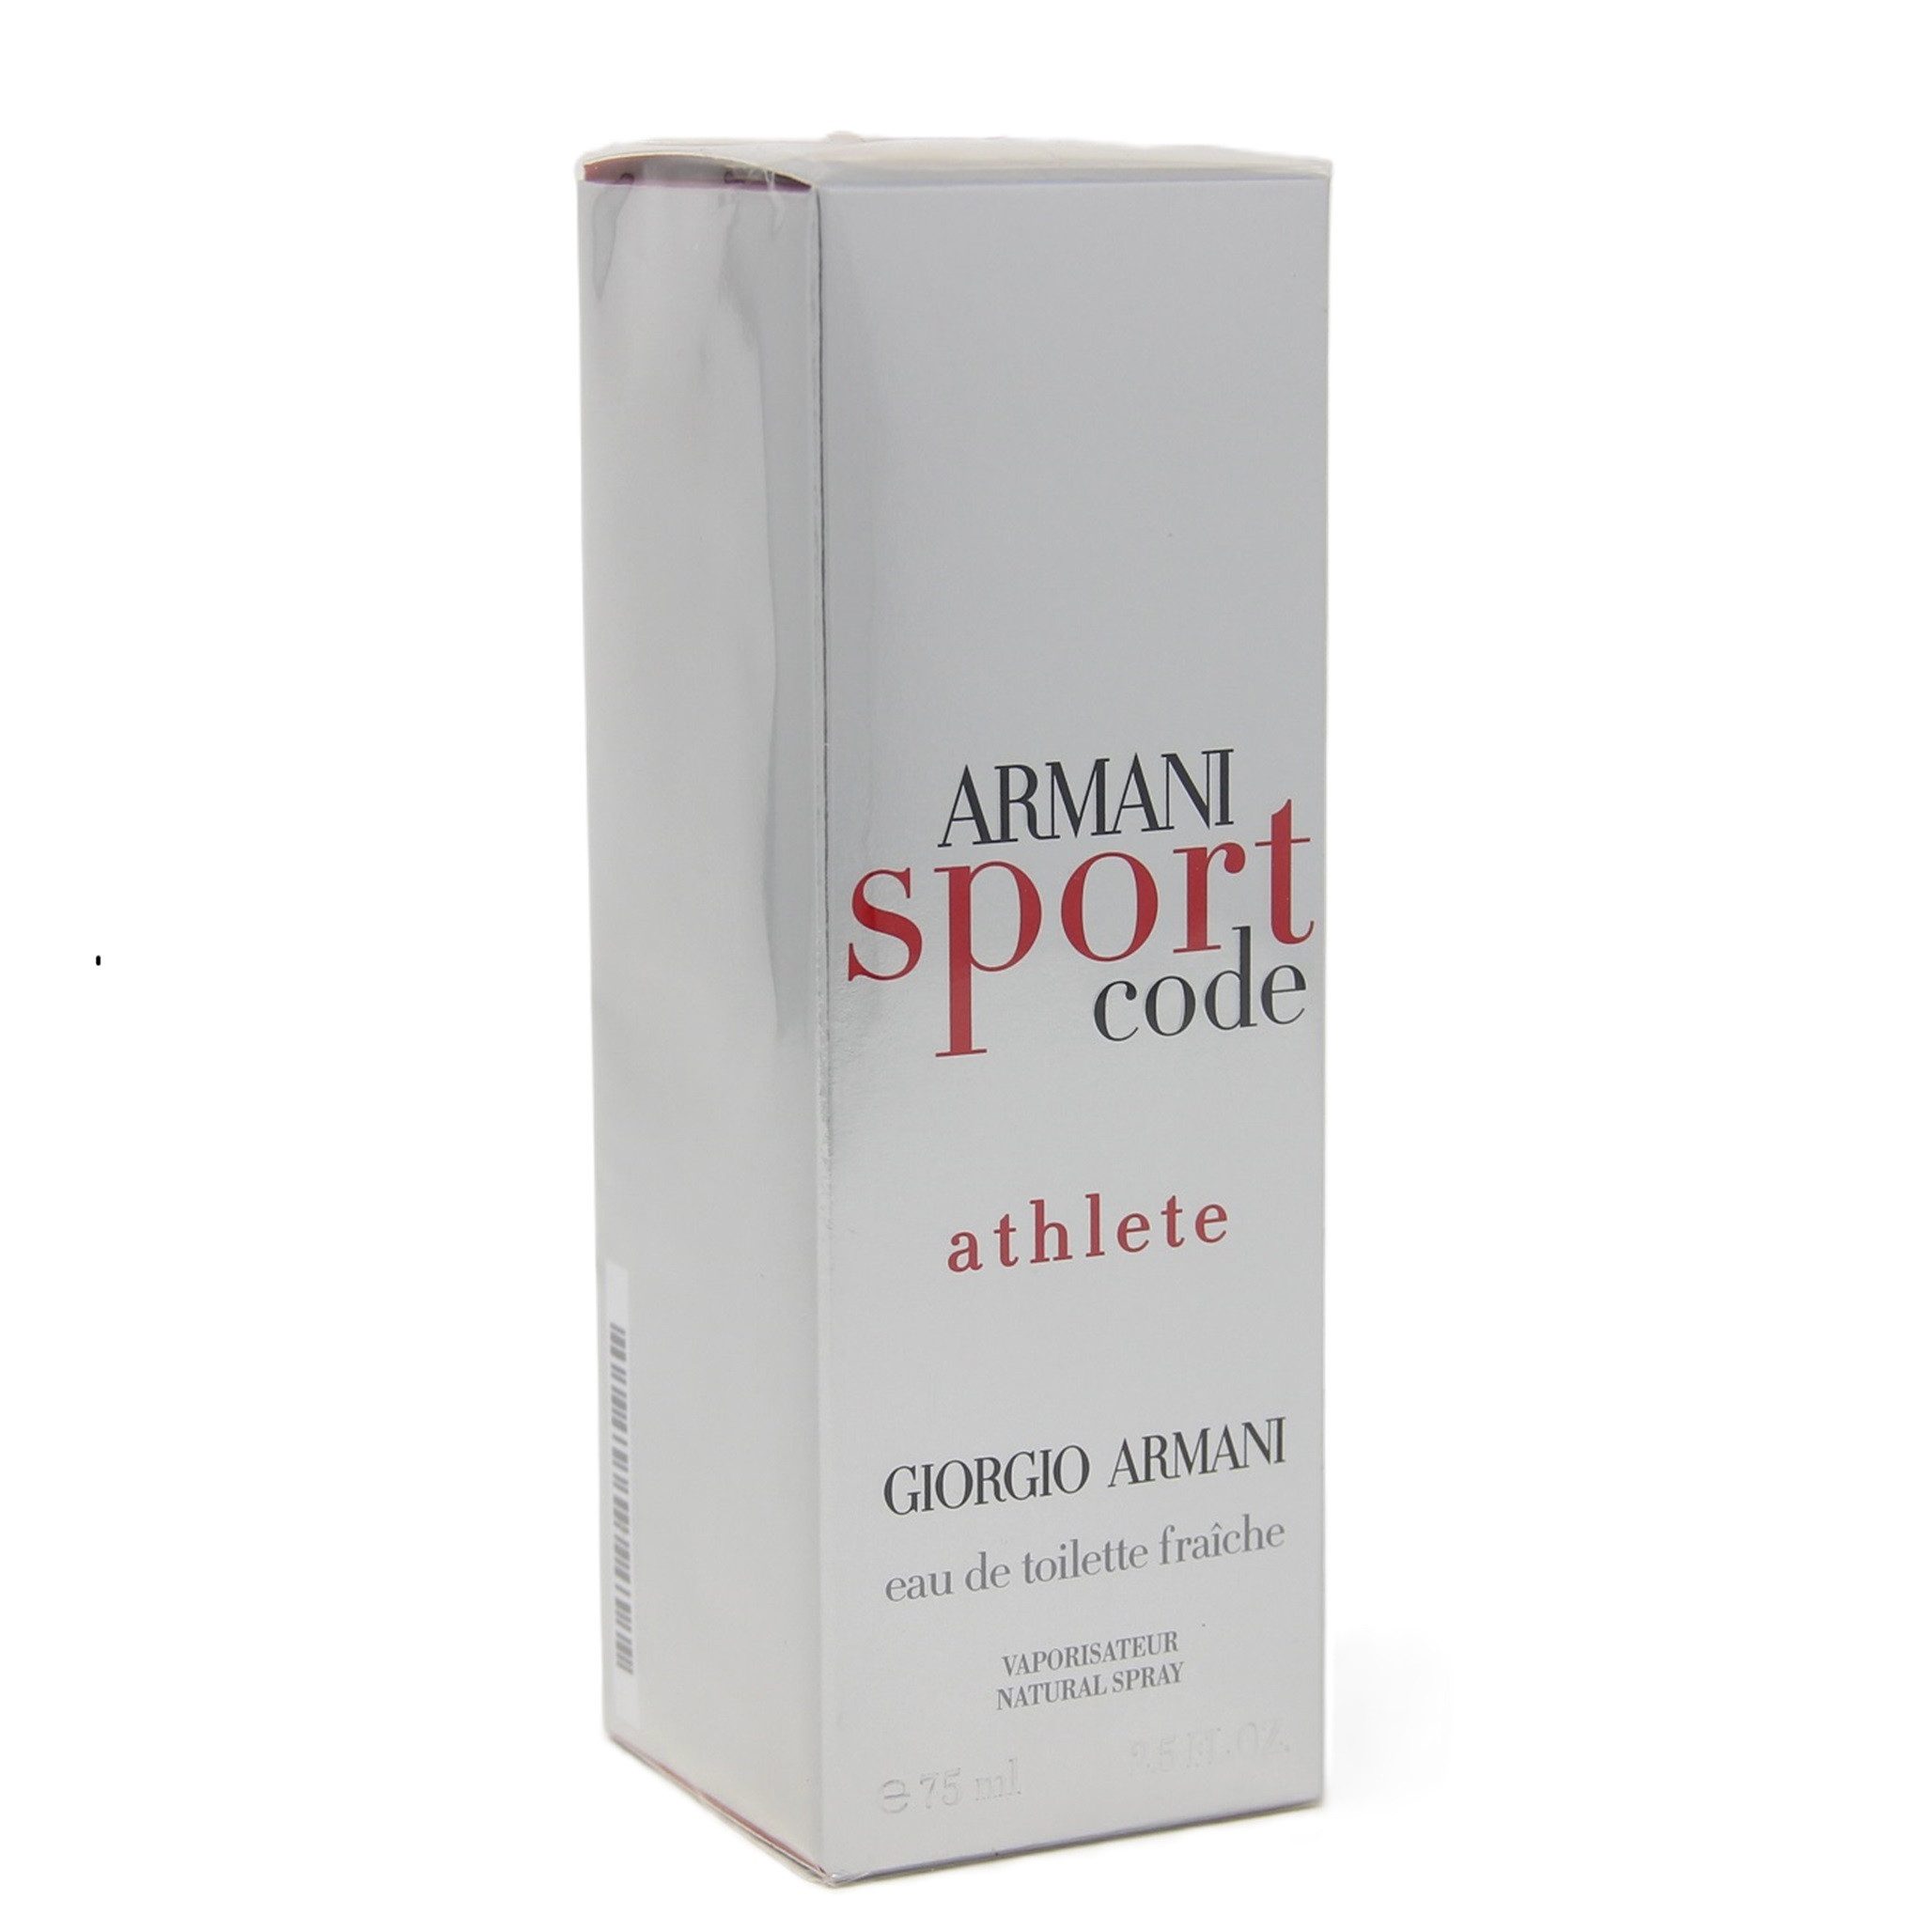 Emporio Armani Eau de Toilette Giorgio Armani Code Sport Athlete Eau de Toilette Faiche 75 ml